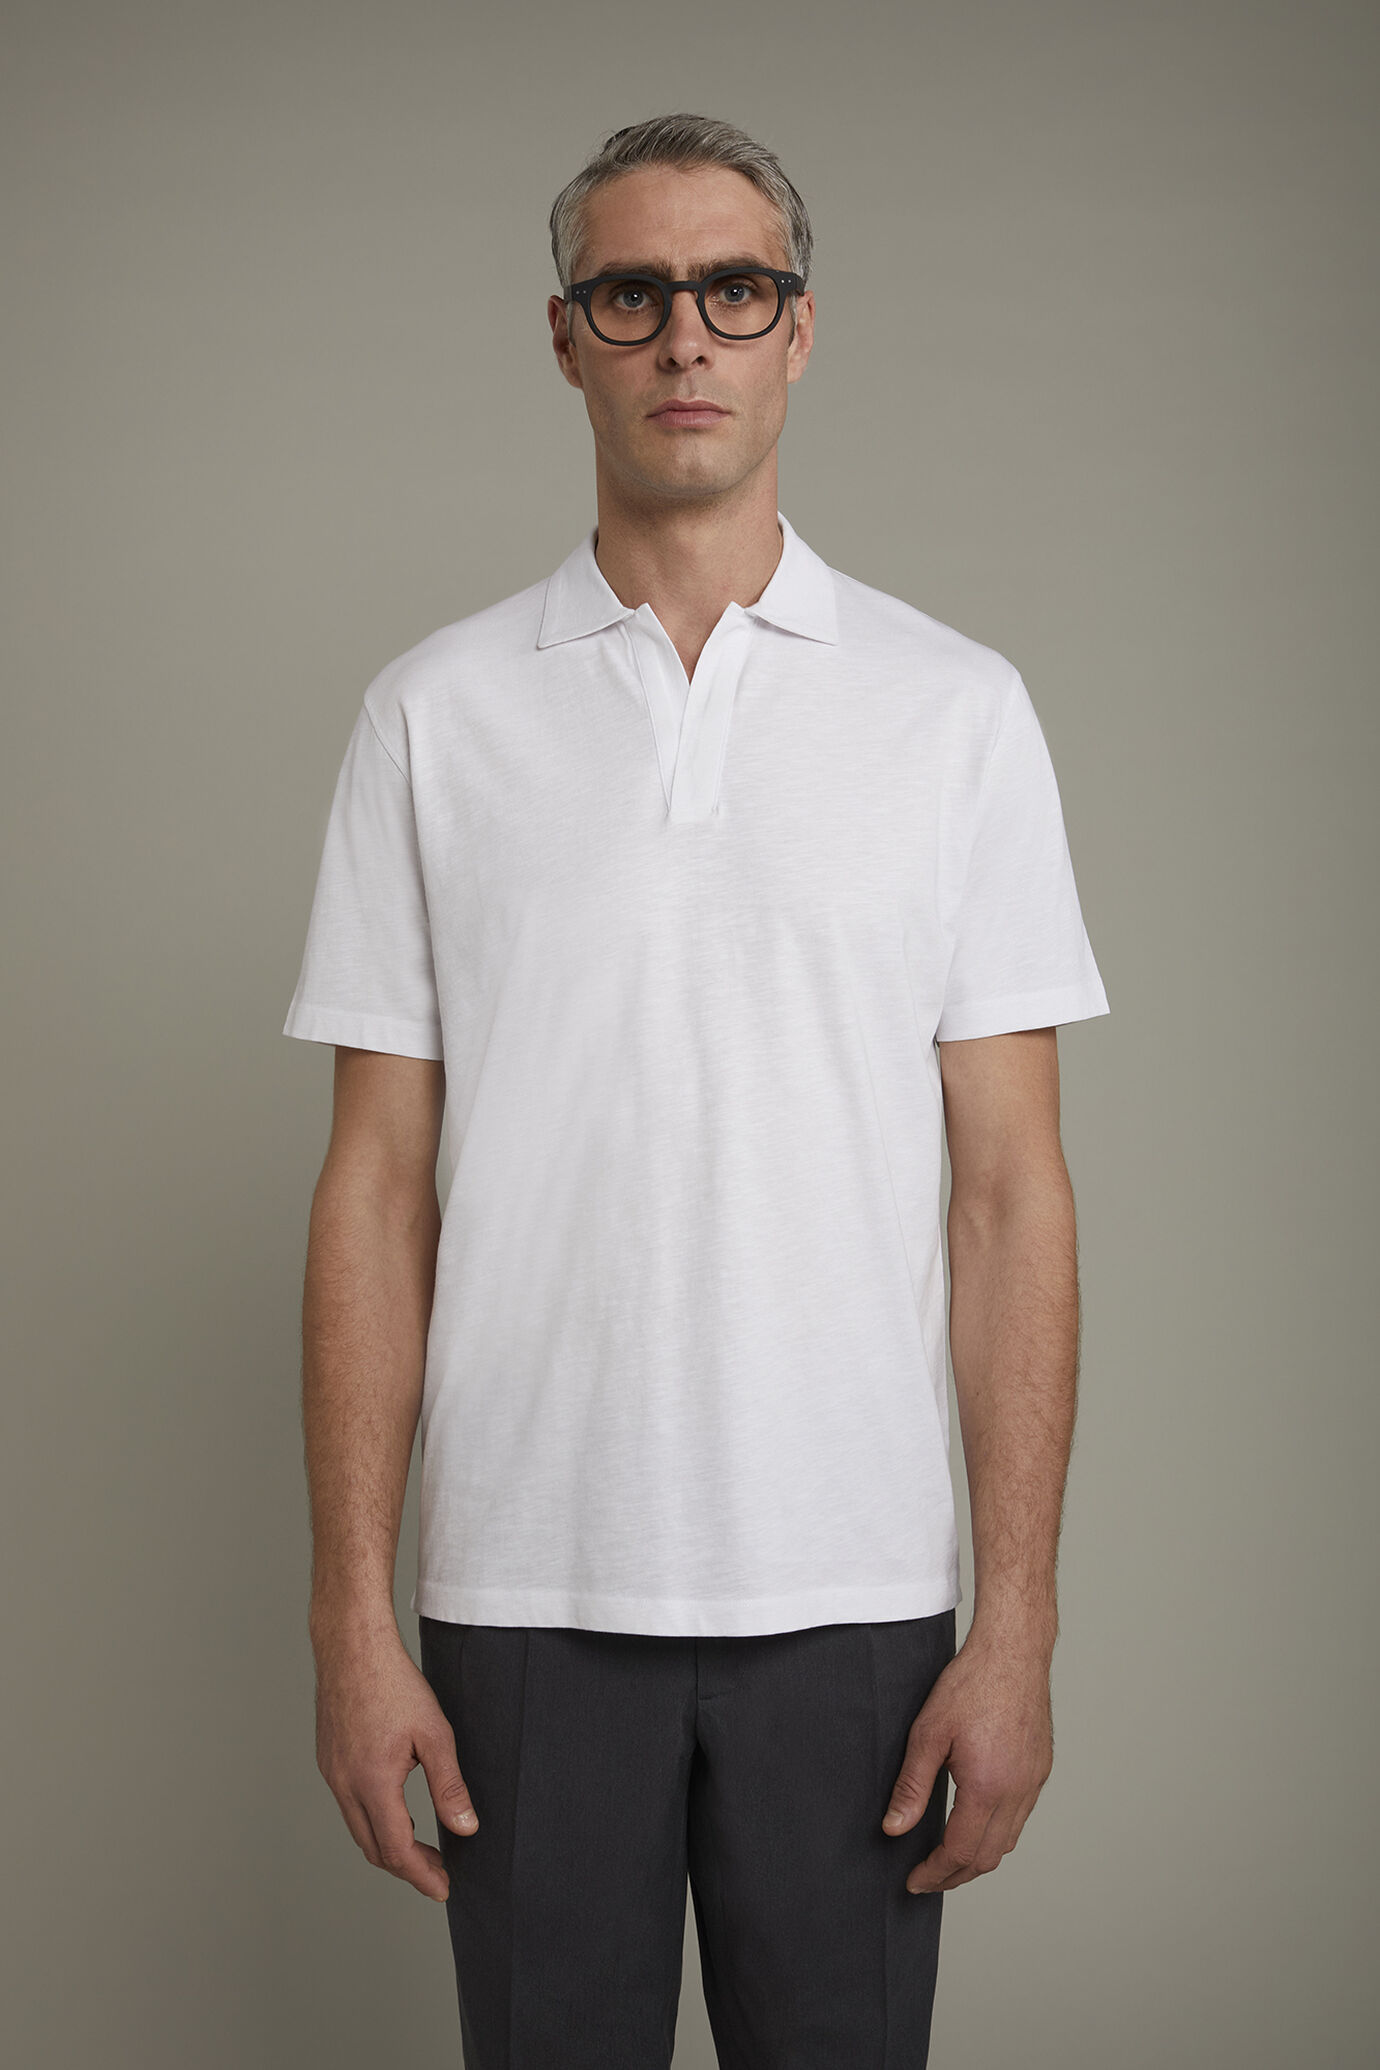 Kurzärmeliges Herren-Poloshirt mit knopflosem Derby-Kragen aus reiner Baumwolle in normaler Passform